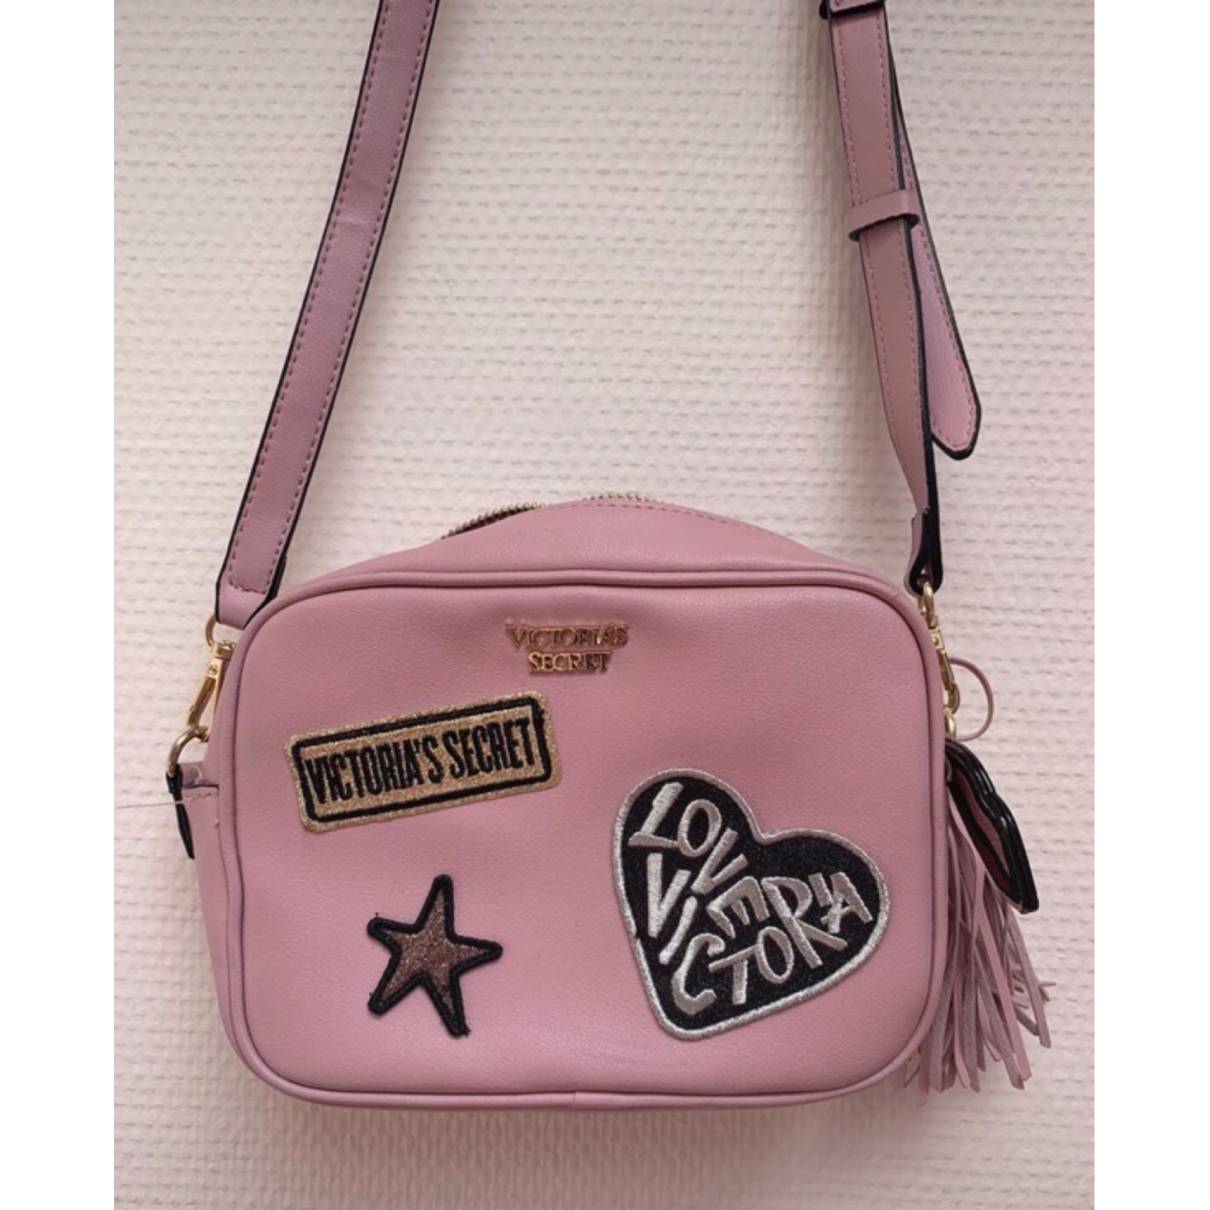 Victoria's Secret Pink Crossbody Belt Bag convertible